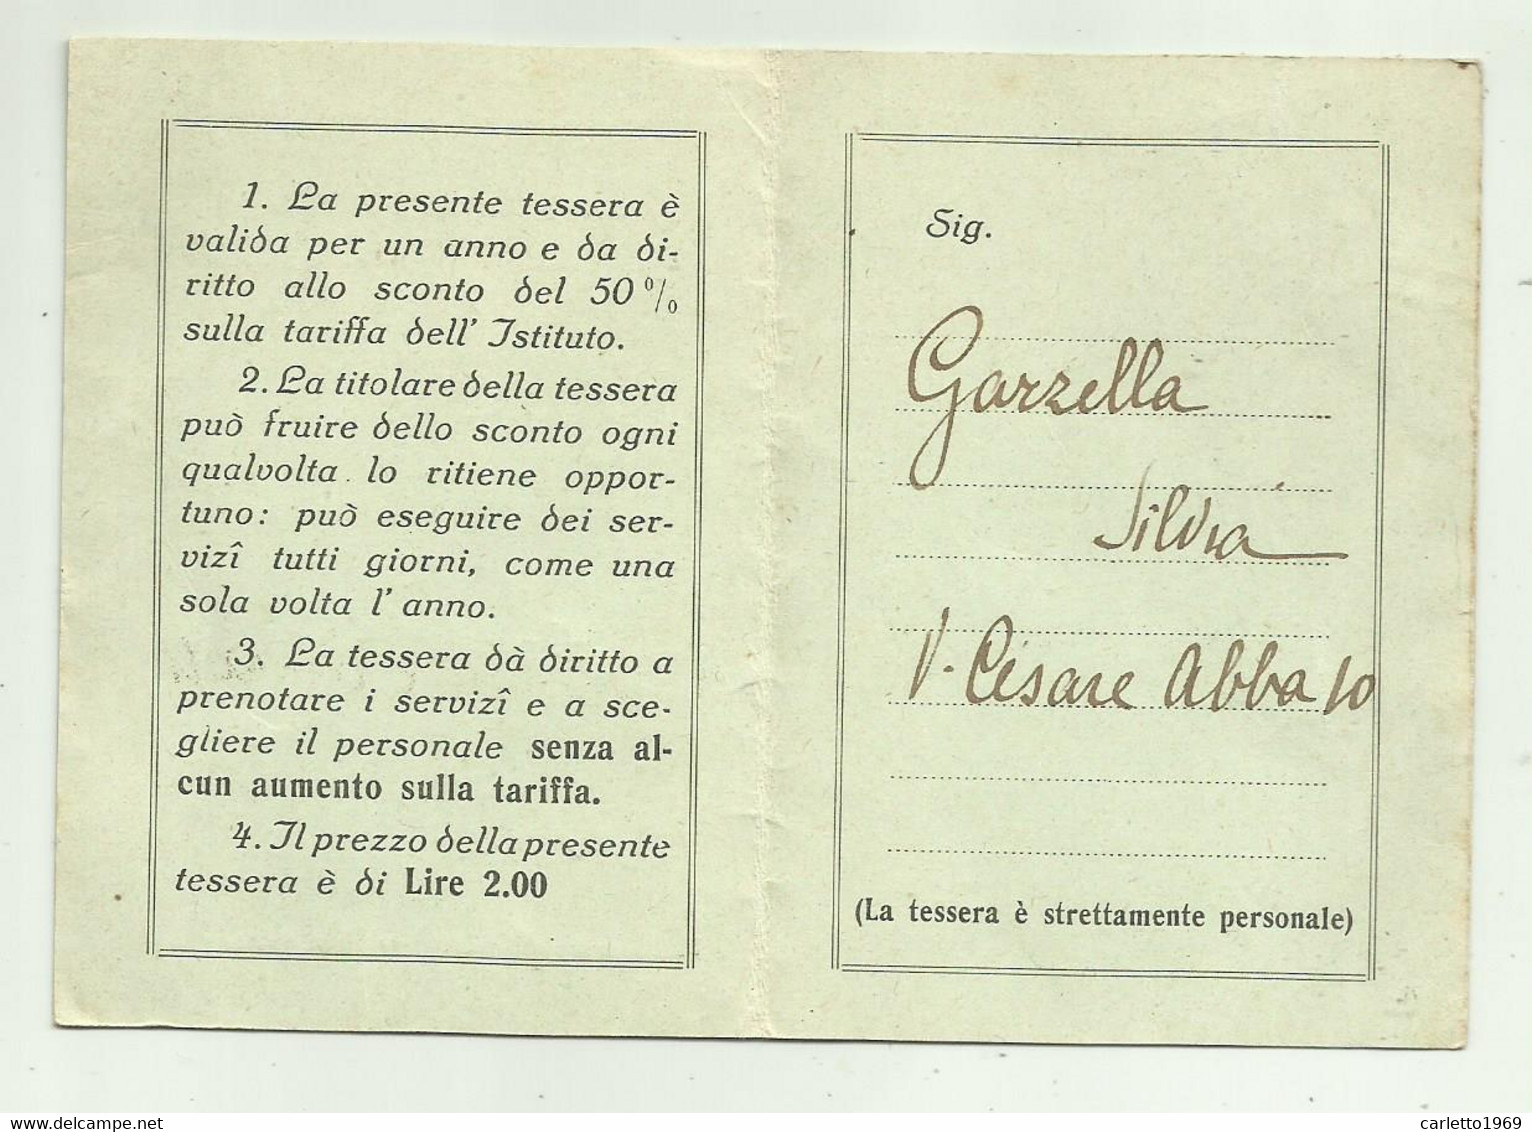 TESSERA ISTITUTO DI BELLEZZA ENRICHETTA BORGHI 1929 - Sammlungen